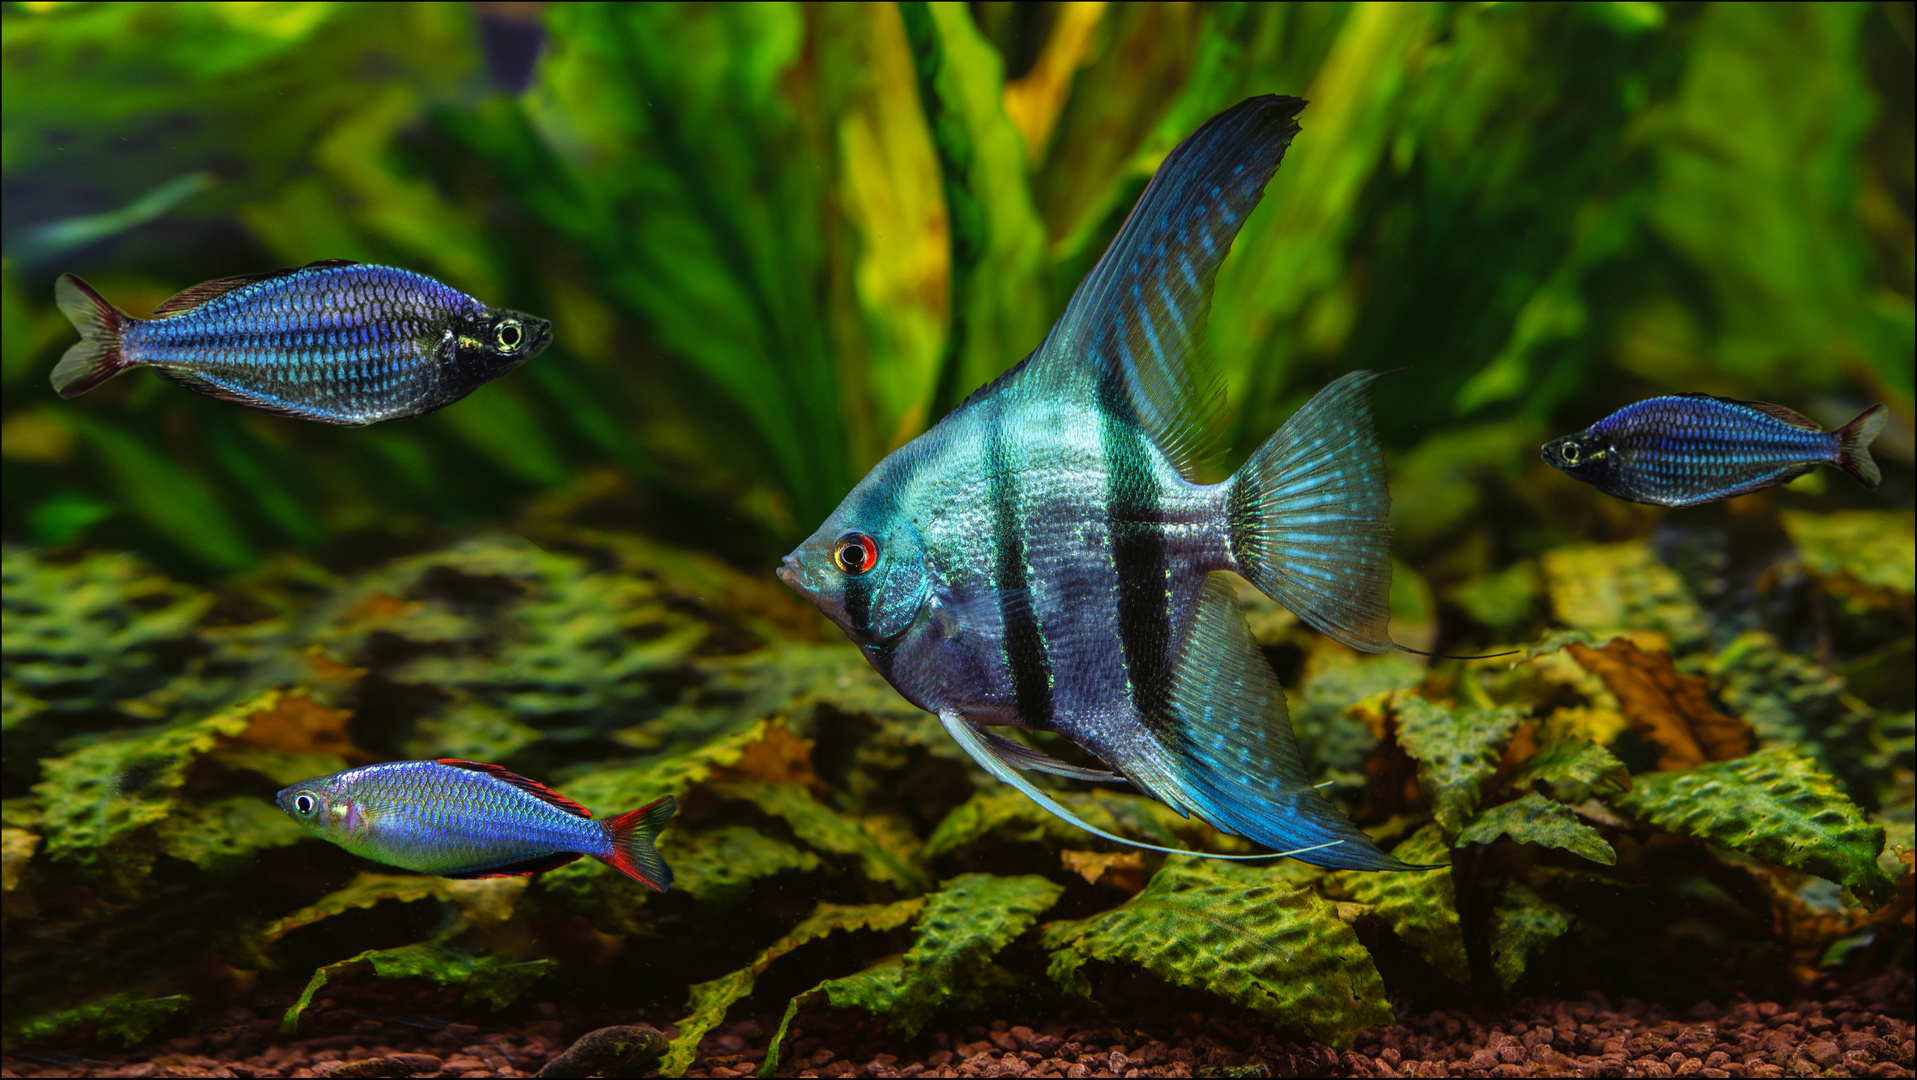 Mein Aquarium mit Diamant Skalar Blau und Diamant-Regenbogenfisch